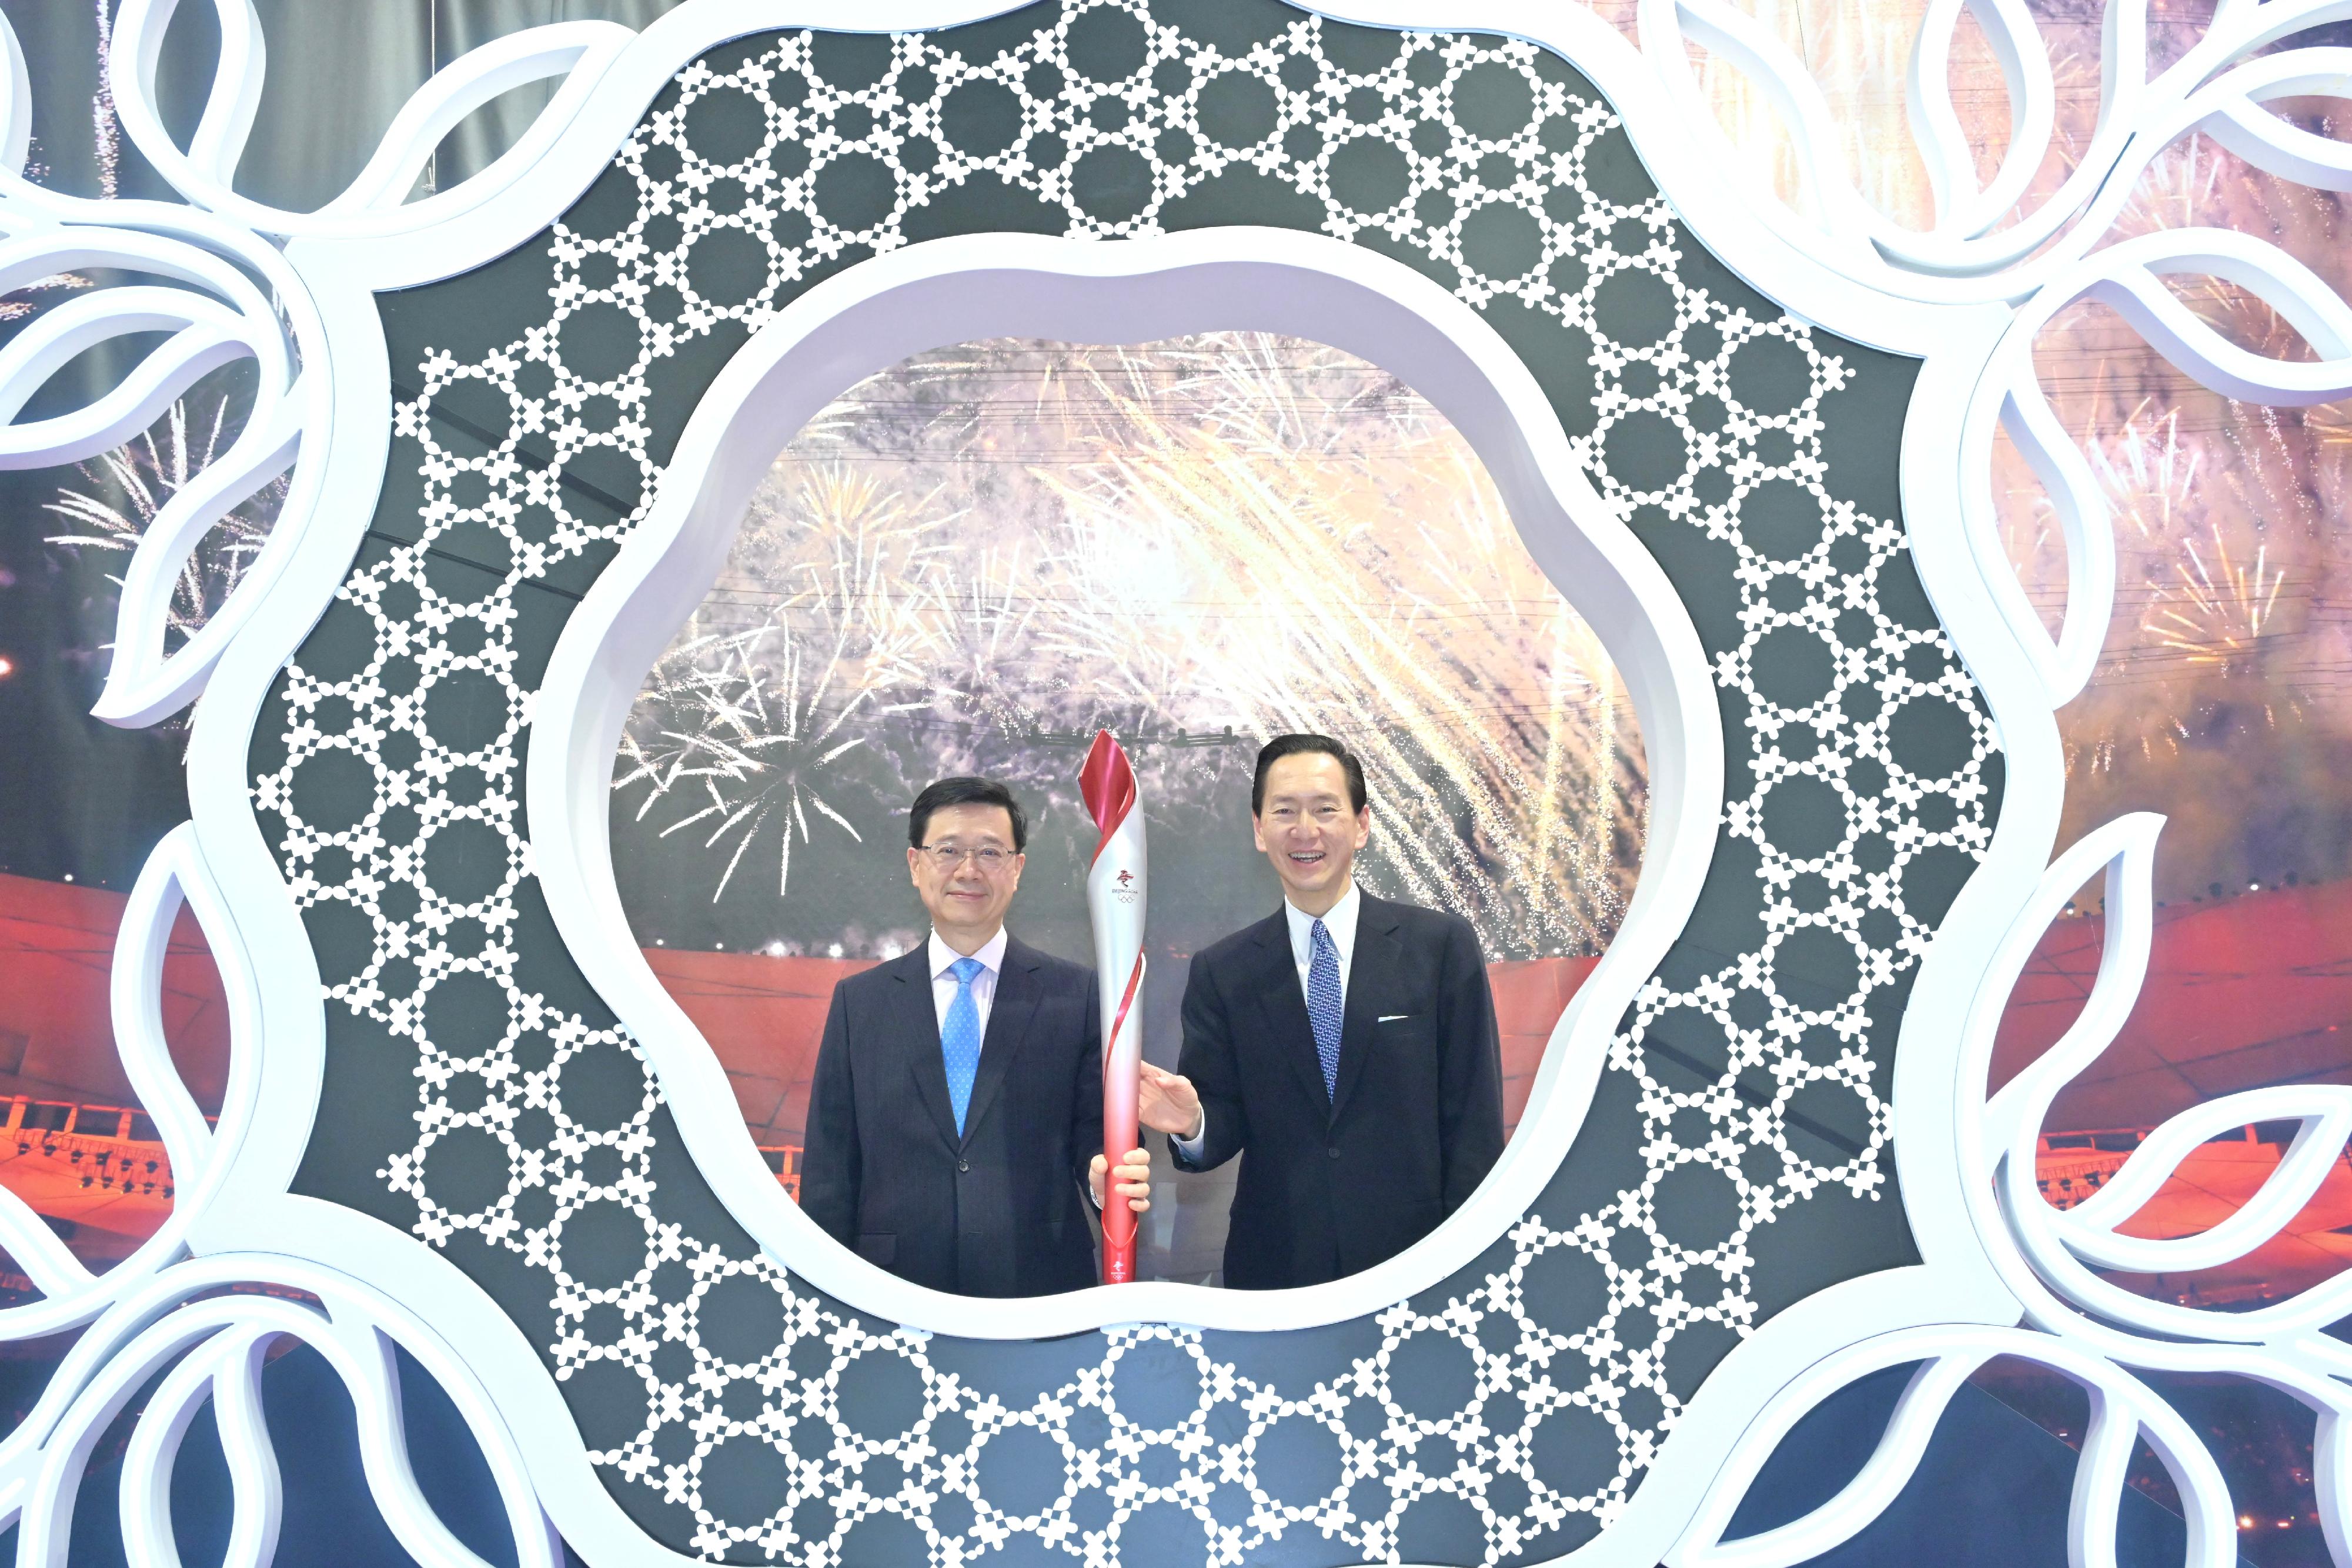 行政长官李家超今日（十二月十二日）出席团结香港基金「创科博览2022」开幕典礼。图示李家超（左）在场内和团结香港基金常务副主席陈智思（右）参观展览。